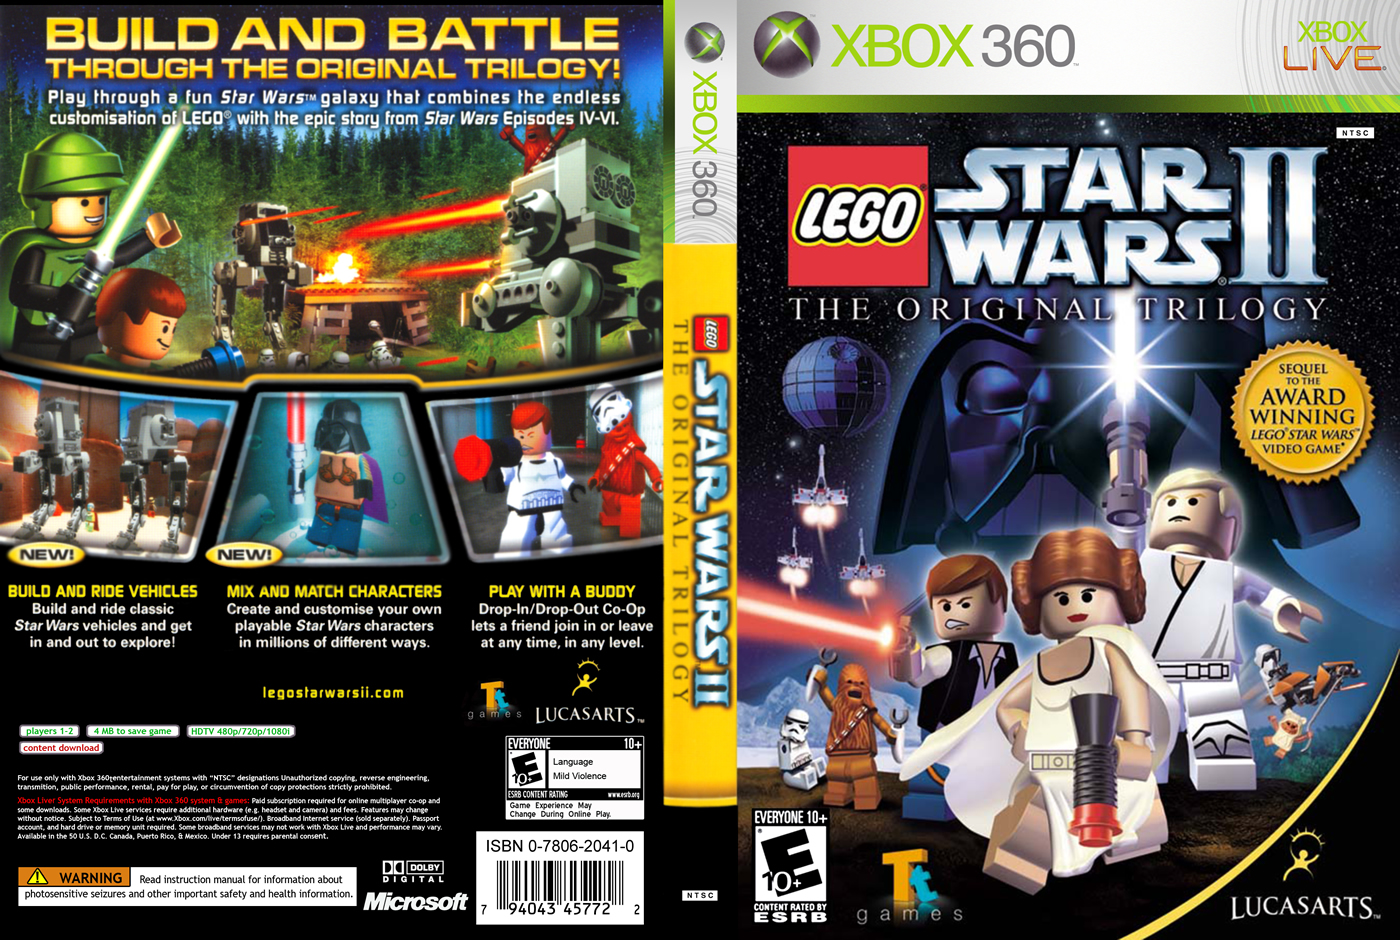 lego-star-wars-2-the-original-trilogy-xbox360-w0551-bem-vindo